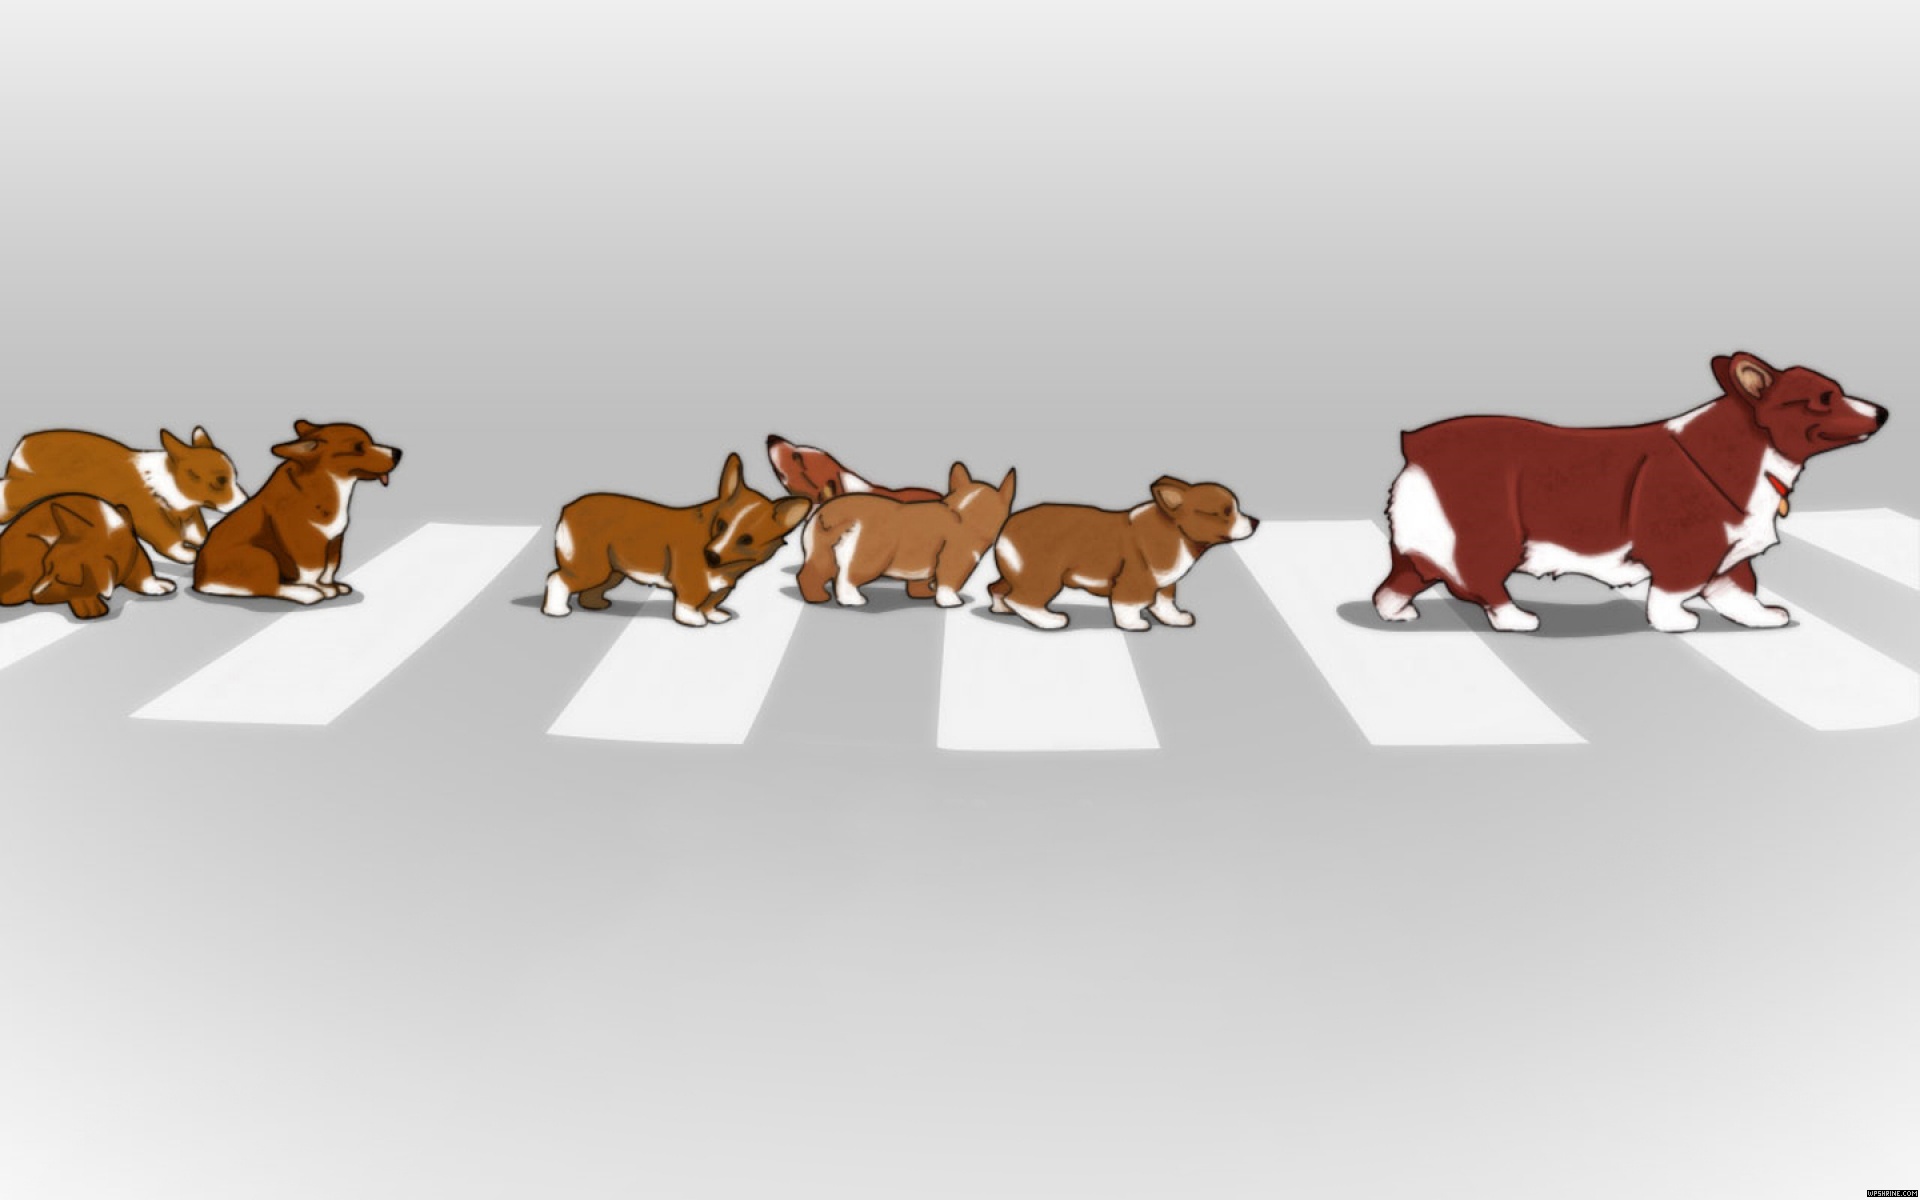 животные, Cowboy Bebop, собаки, щенки, корги, переходы, улица, Ein ( Cowboy Bebop ) - обои на рабочий стол